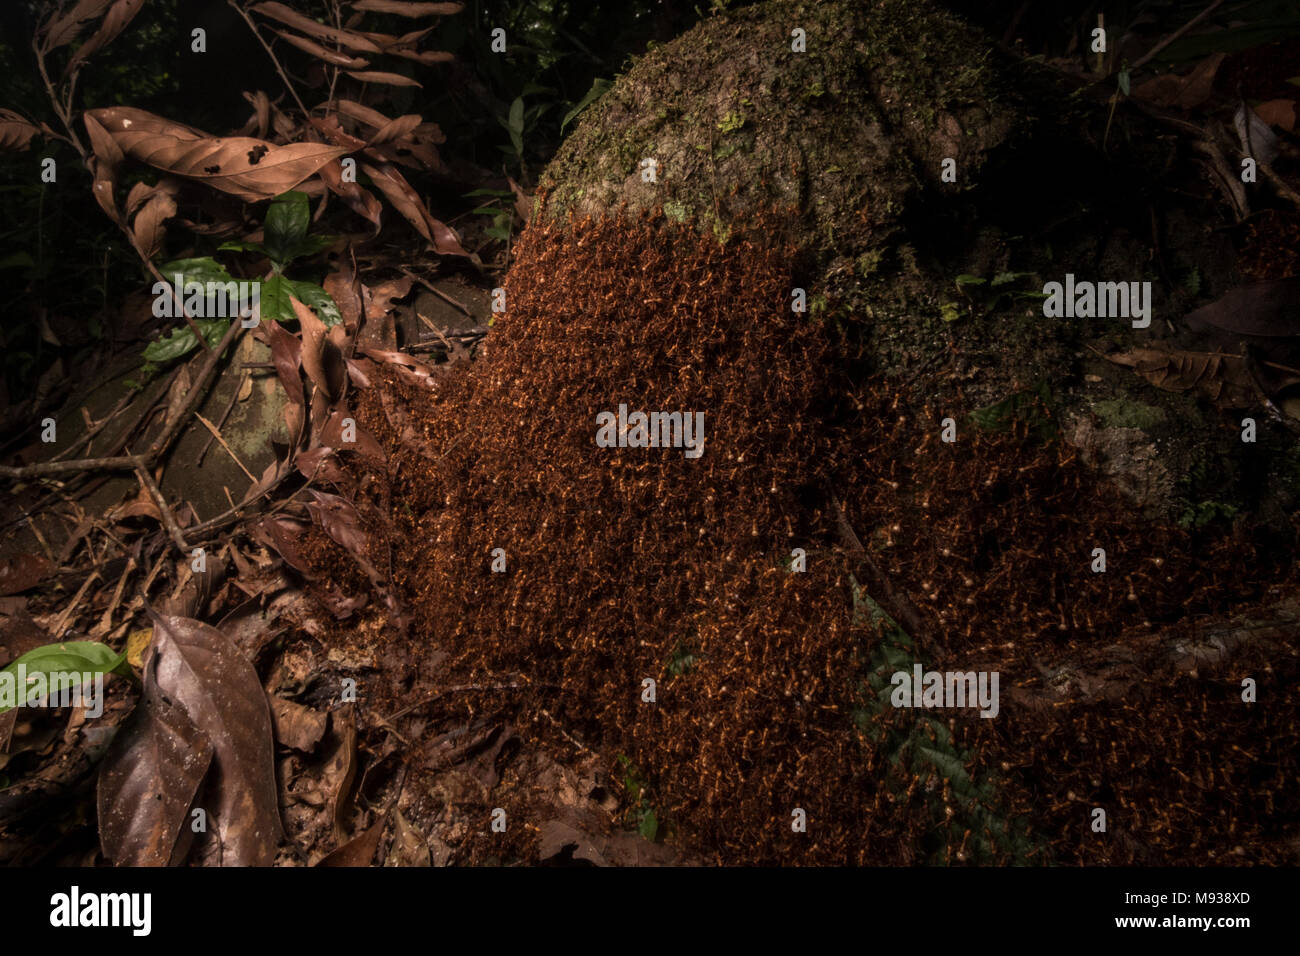 Una horda rebosantes de army hormigas utiliza su propio cuerpo para construir su hogar temporal, este móvil ant nest es llamado un vivac para army hormigas Foto de stock